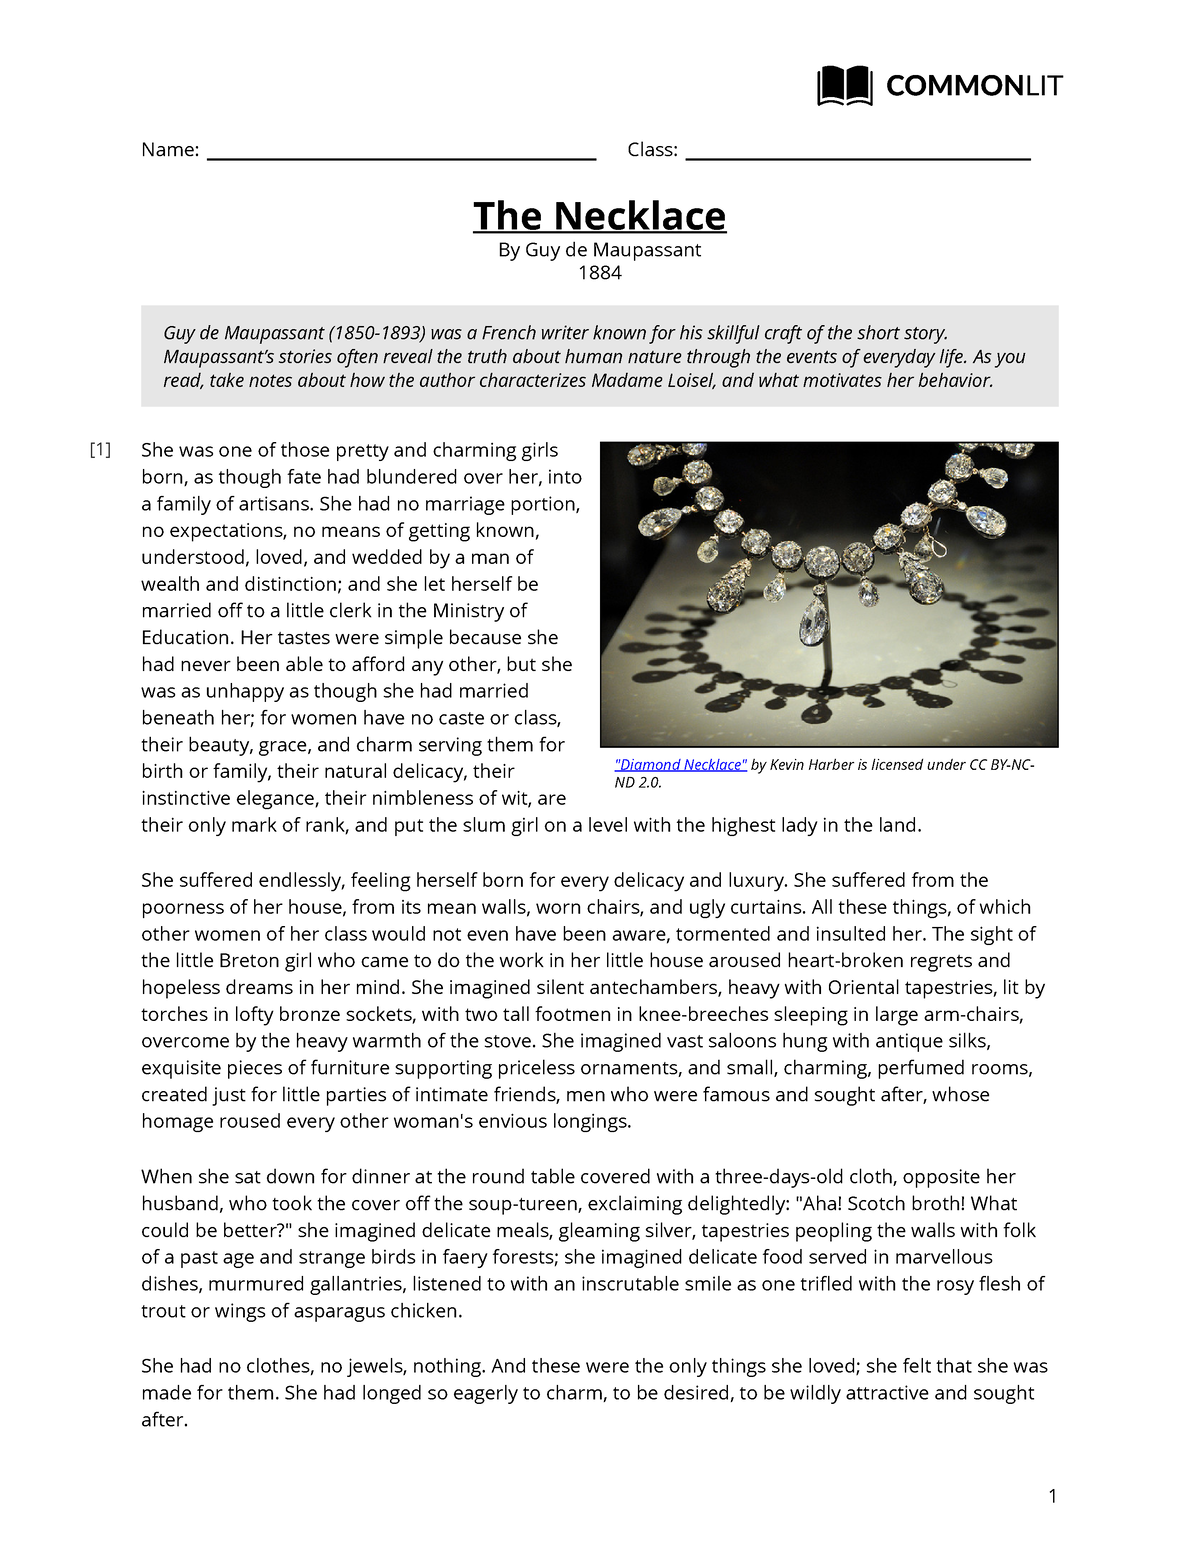 The Necklace Guy de Maupassant. - ppt download